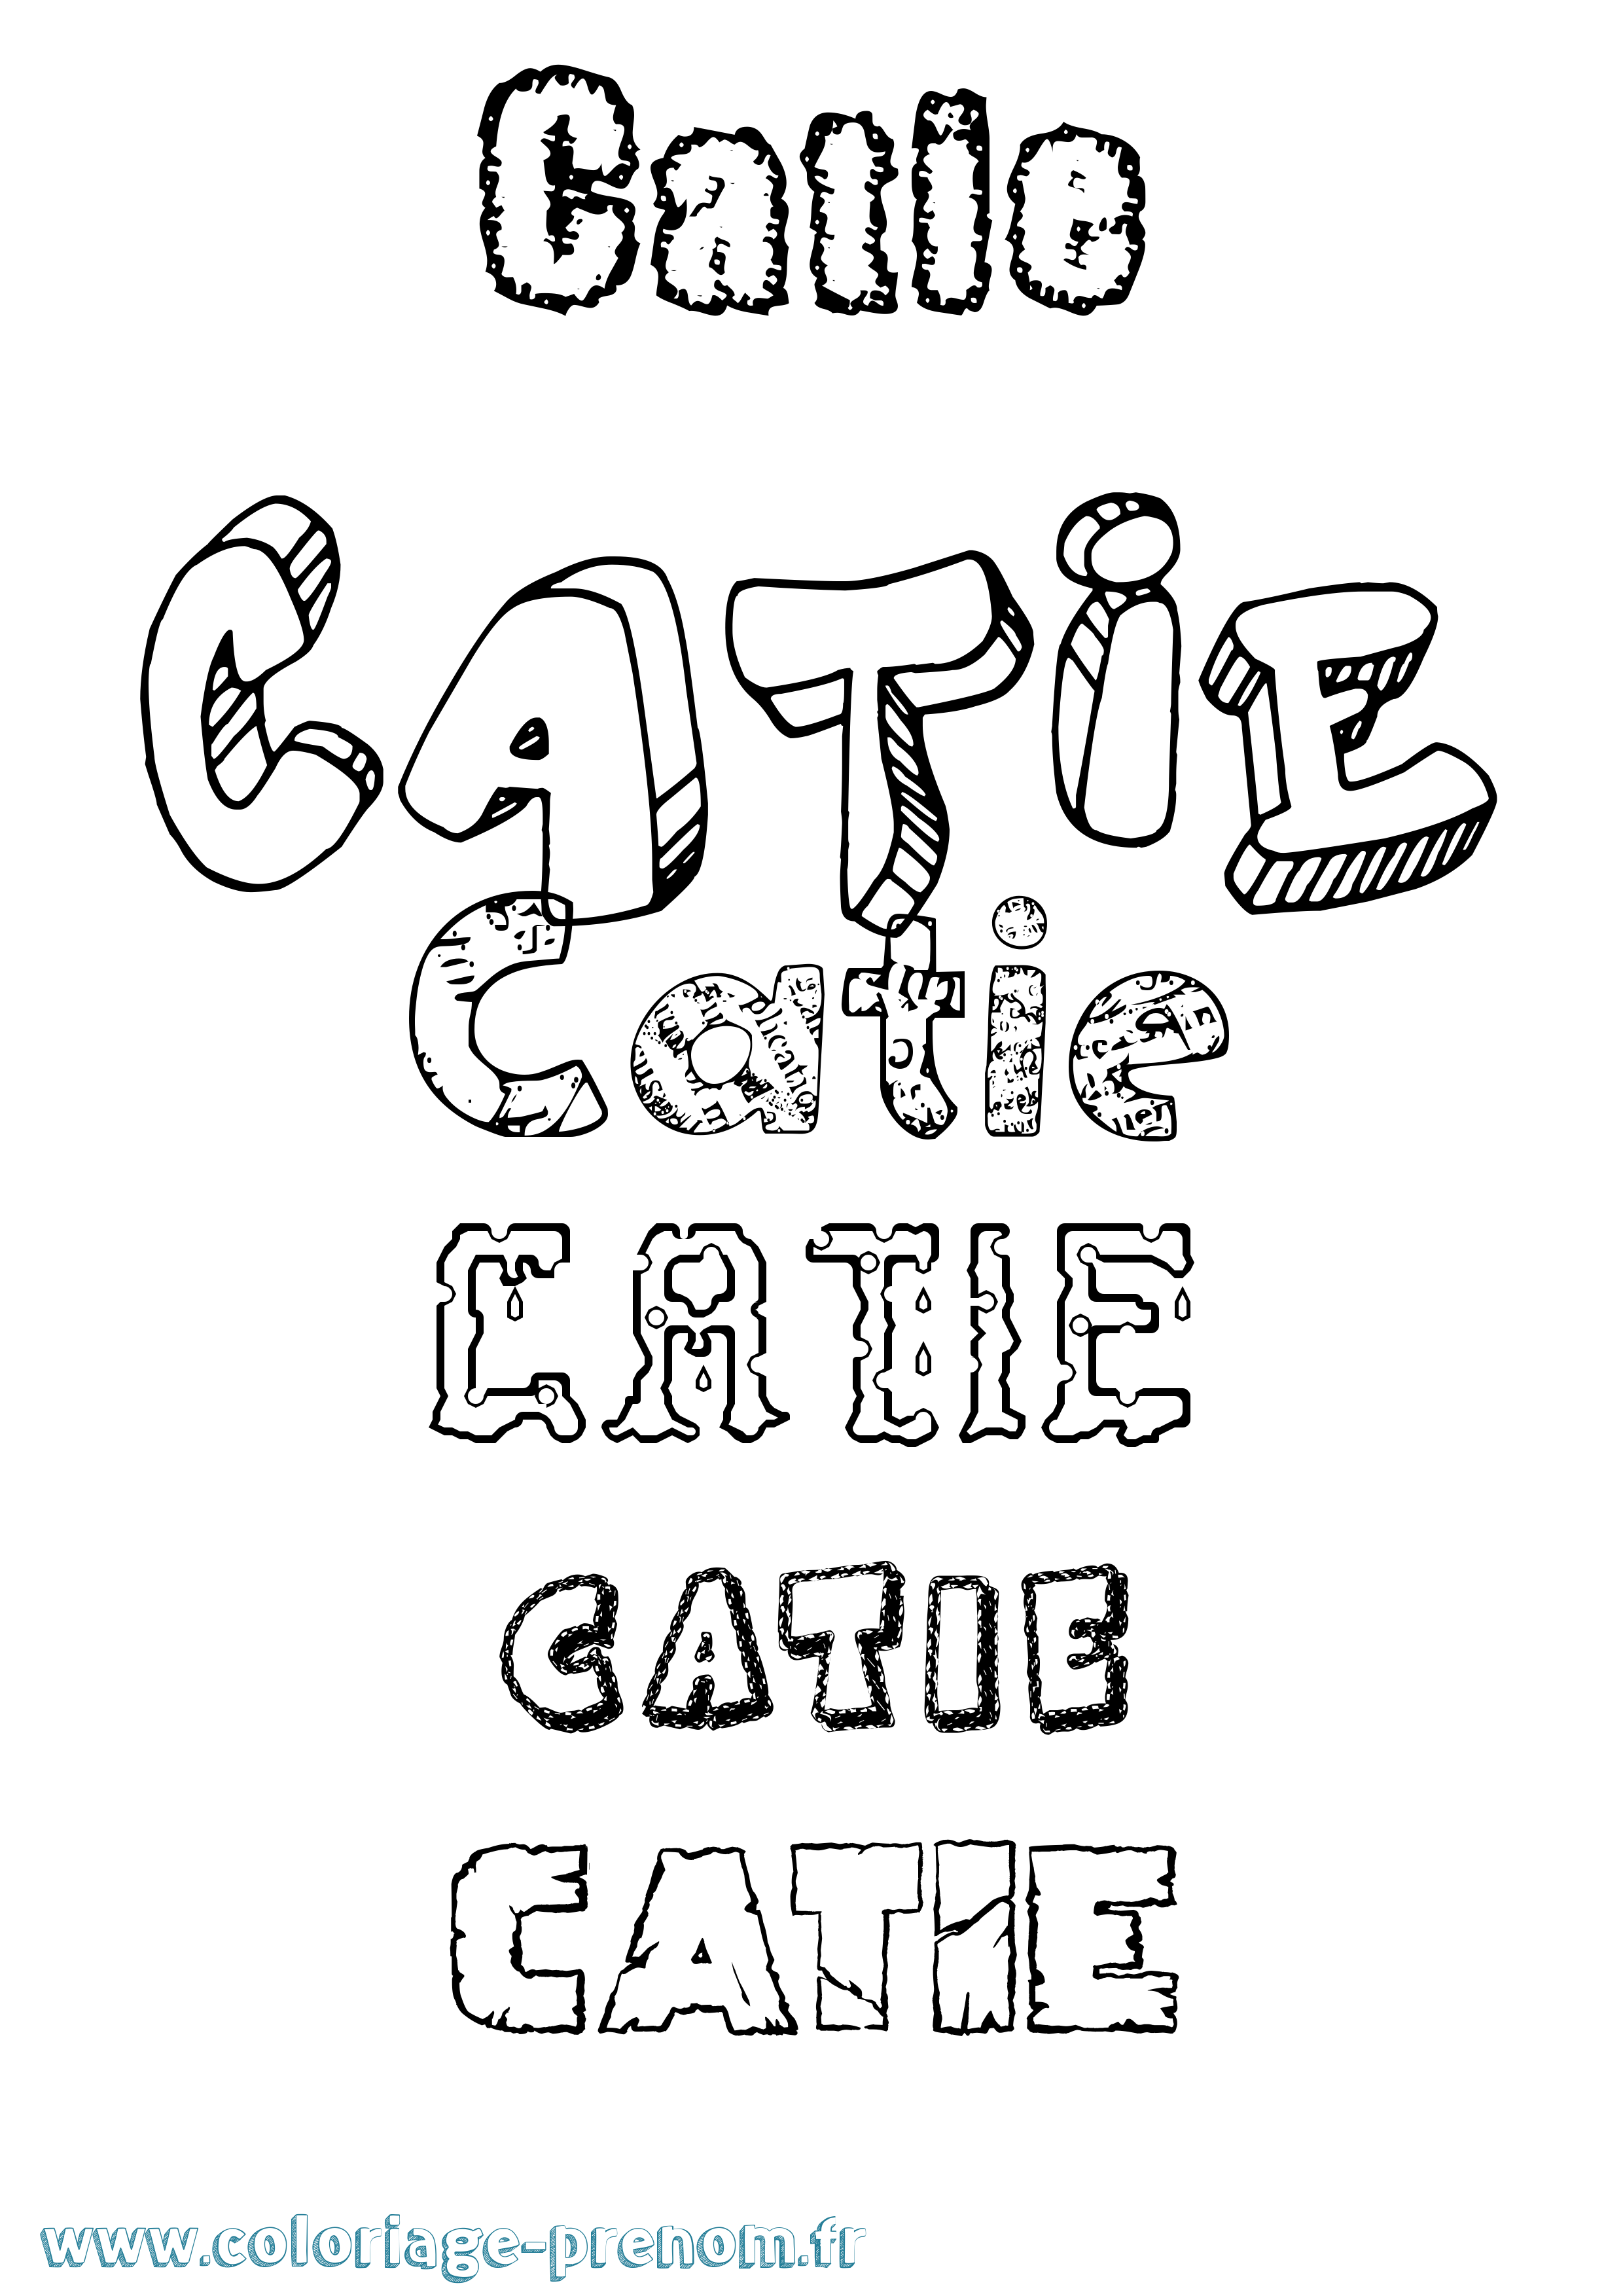 Coloriage prénom Catie Destructuré